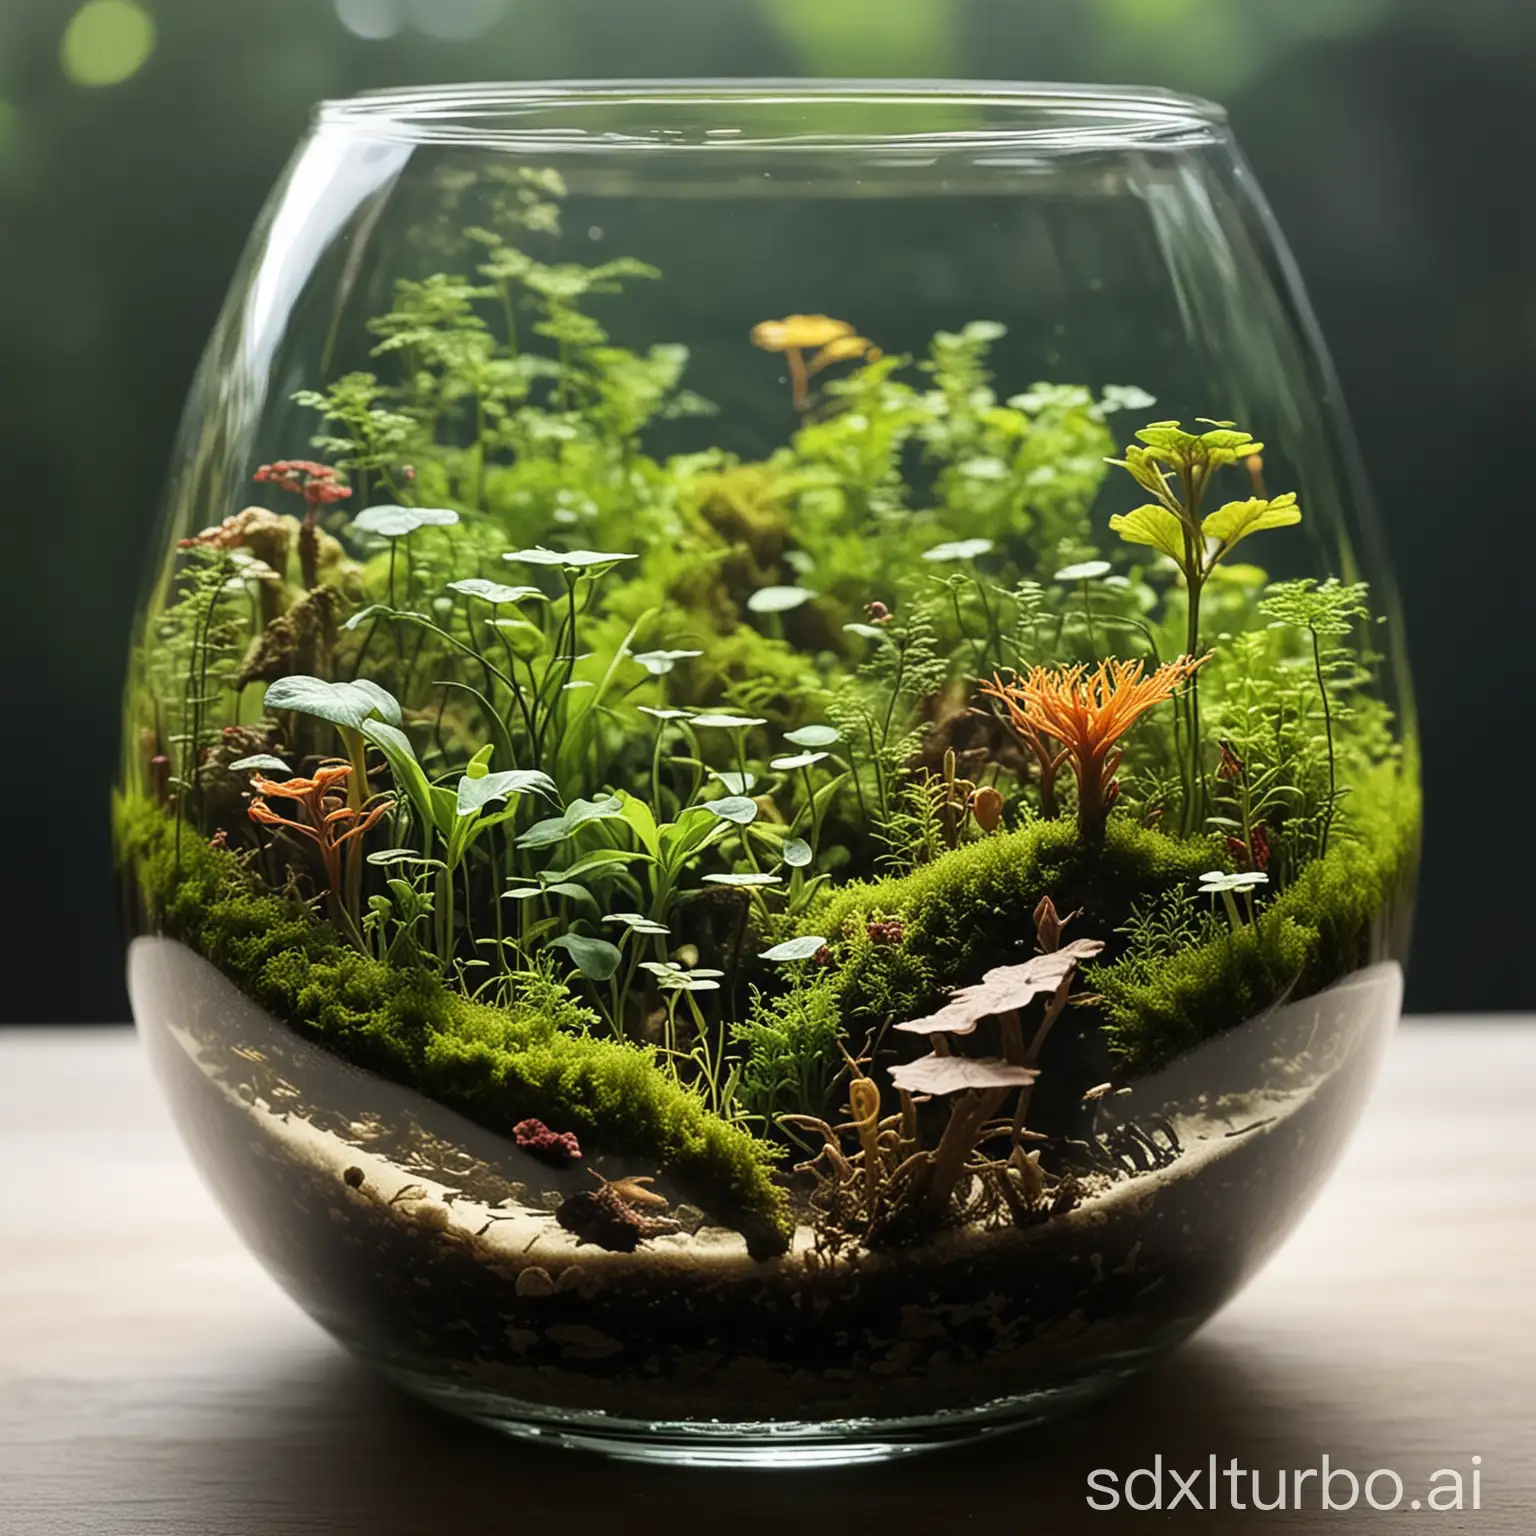 Thriving-Ecosystem-Inside-A-Glass-Terrarium